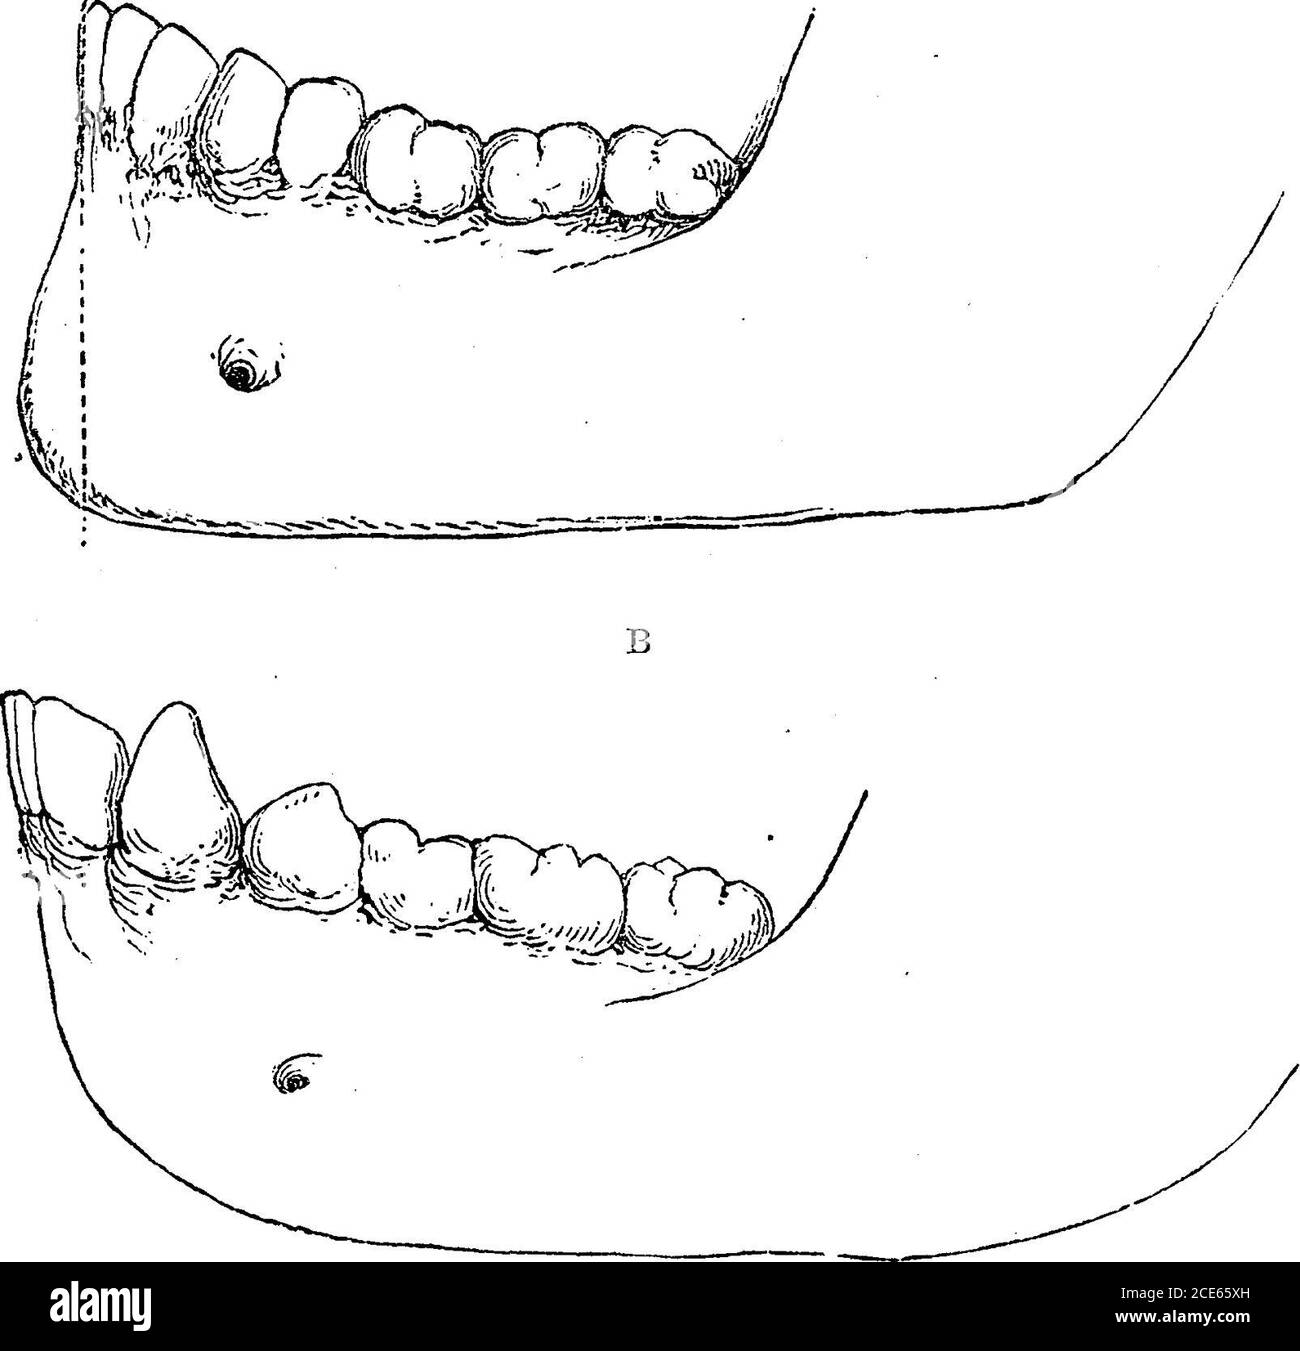 . Antropologia . razze del gruppo umano. L'uomo, almeno il bianco, ha denti verticali; i canini, così come i molari e gli incisivi, sono vicini e più piccoli. I molari permanenti ispiccoli hanno due tubercoli, e i quattro più grandi; in questo rispetto non c'è differenza tra lui e gli antropoidi. Ci sono venti denti temporanei e trentadue denti permanenti, esactlyas nelle quattro scimmie antropoidi, i piteciani, e il numero maggiore dei lemuri. Nei cebiani, un piccolo molare è addodon ogni lato, che aumenta il loro numero totale a trentasei. Alcuni CHAP, i.] CARATTERI FISICI. 59 scimmia Foto Stock